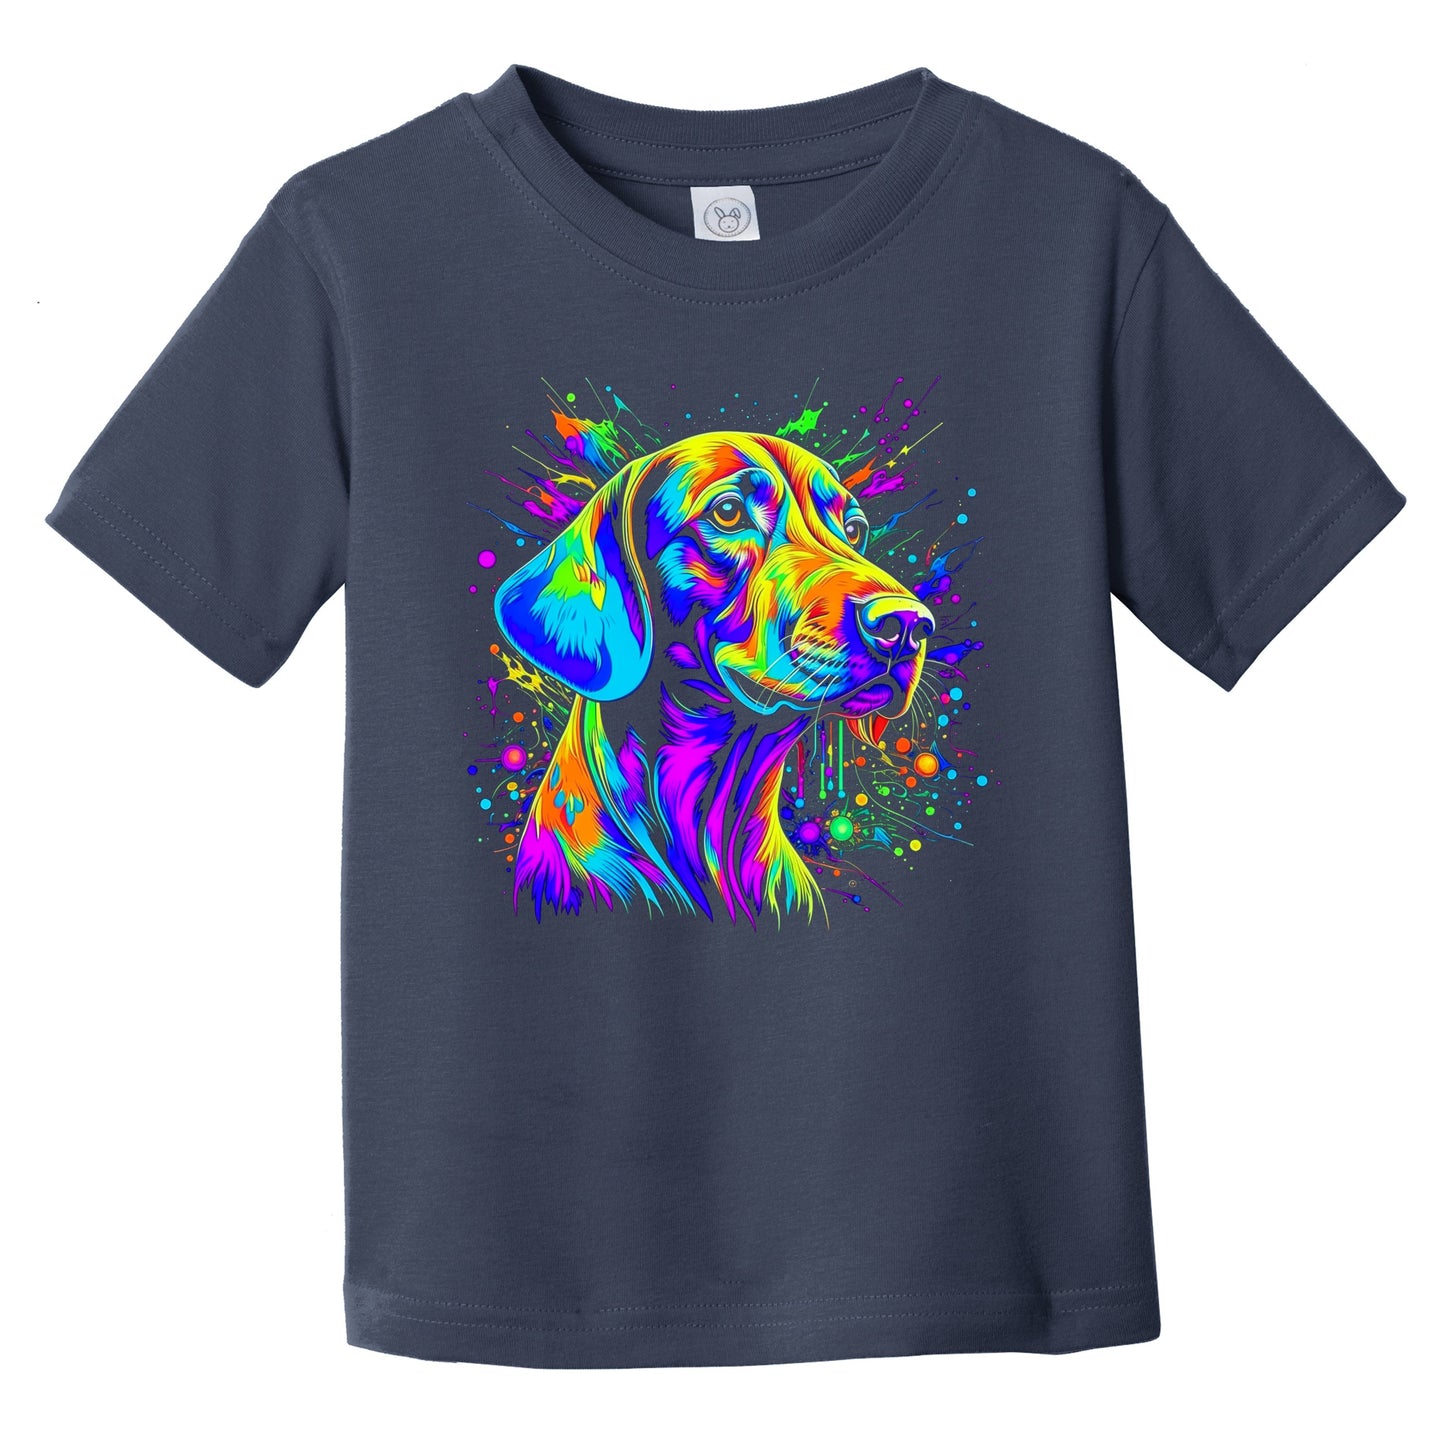 Colorful Bright Vizsla Vibrant Psychedelic Dog Art Infant Toddler T-Shirt